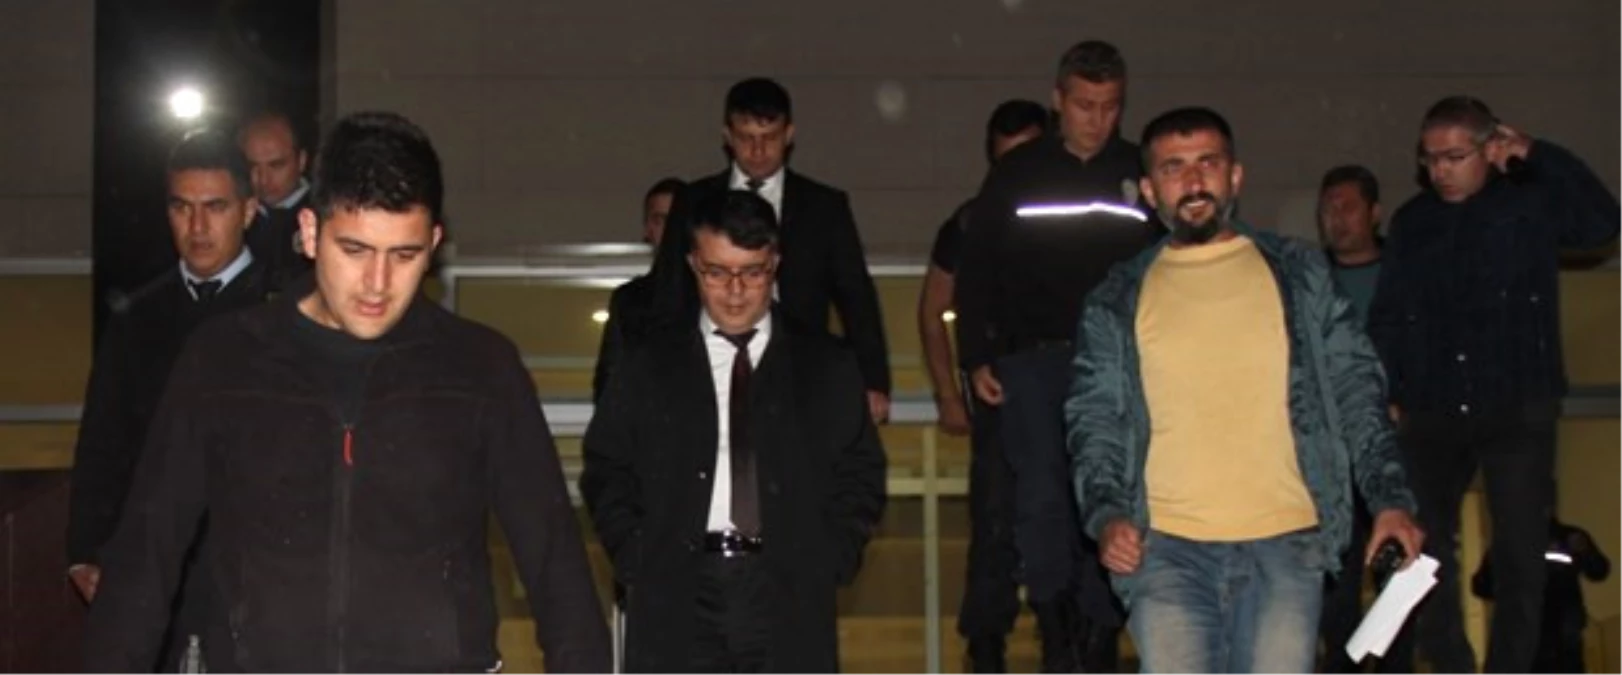 Kars İl Jandarma Komutanı Tutuklandı